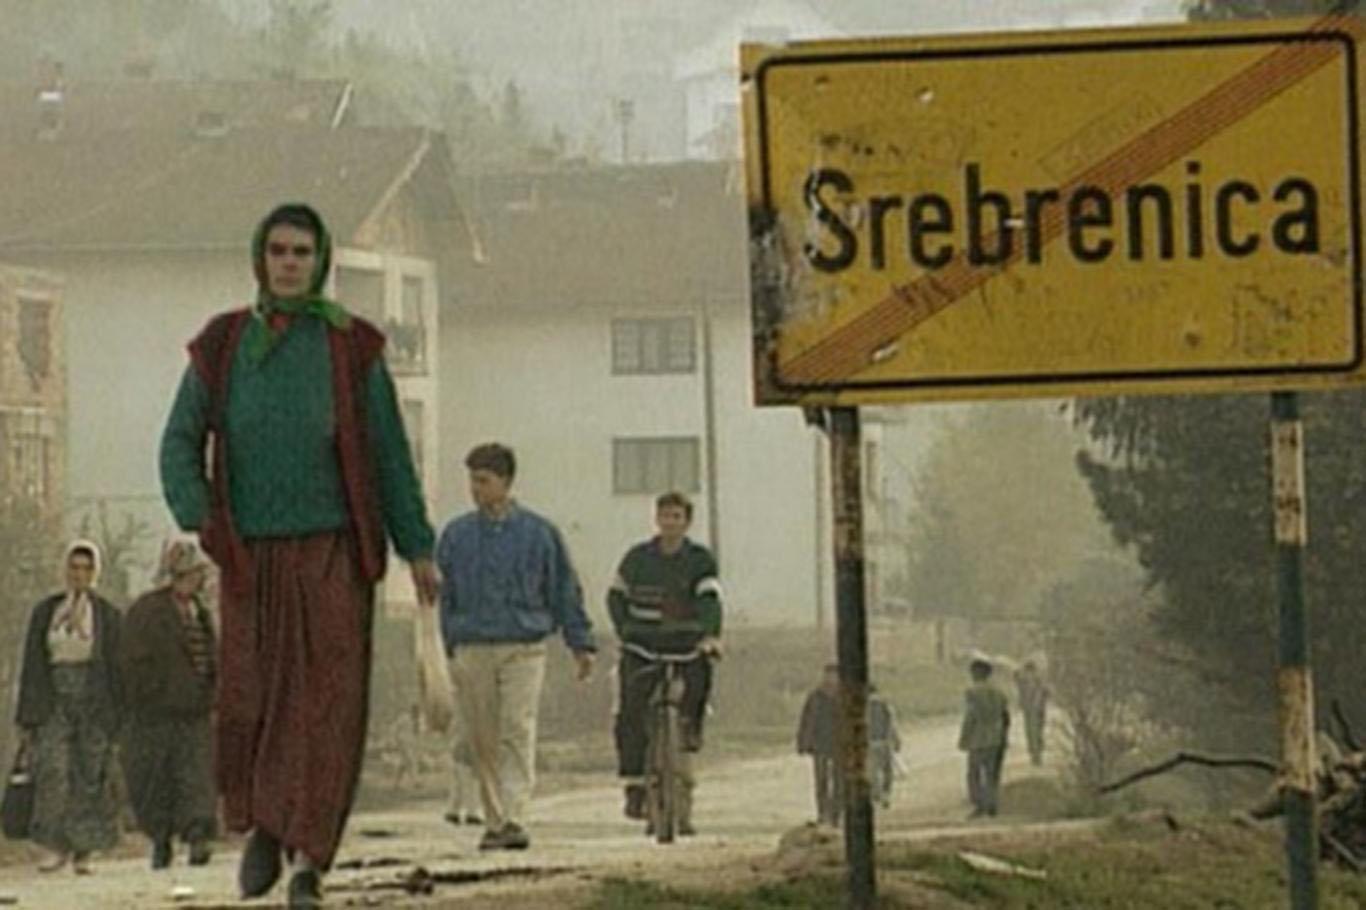 İkinci Dünya Savaşı sonrası yaşanmış en büyük soykırım: Srebrenitsa